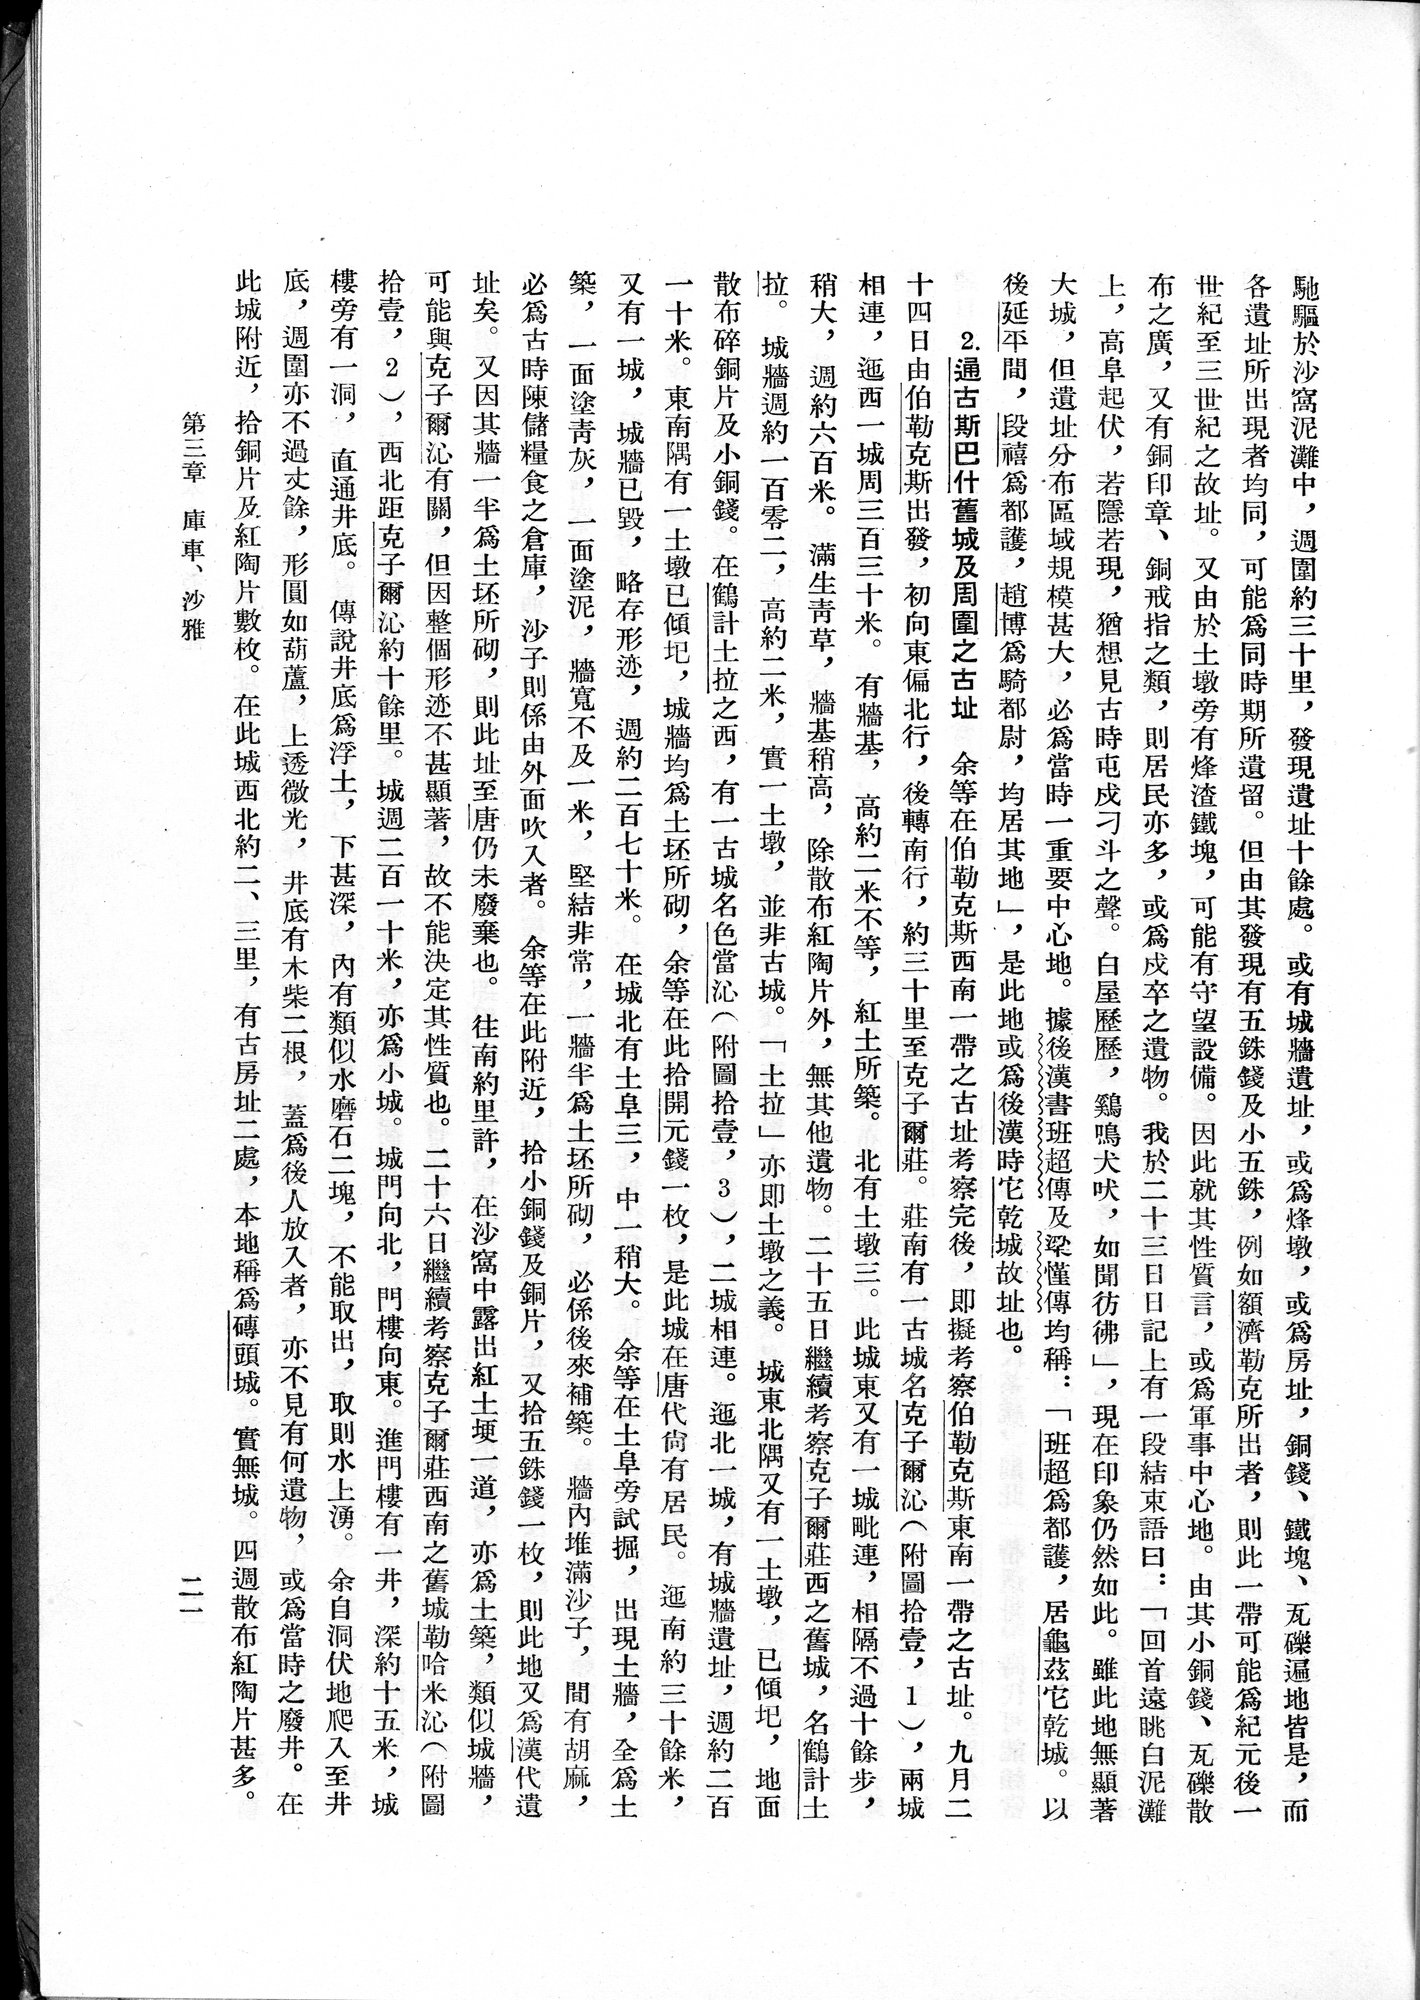 塔里木盆地考古記 : vol.1 / Page 45 (Grayscale High Resolution Image)